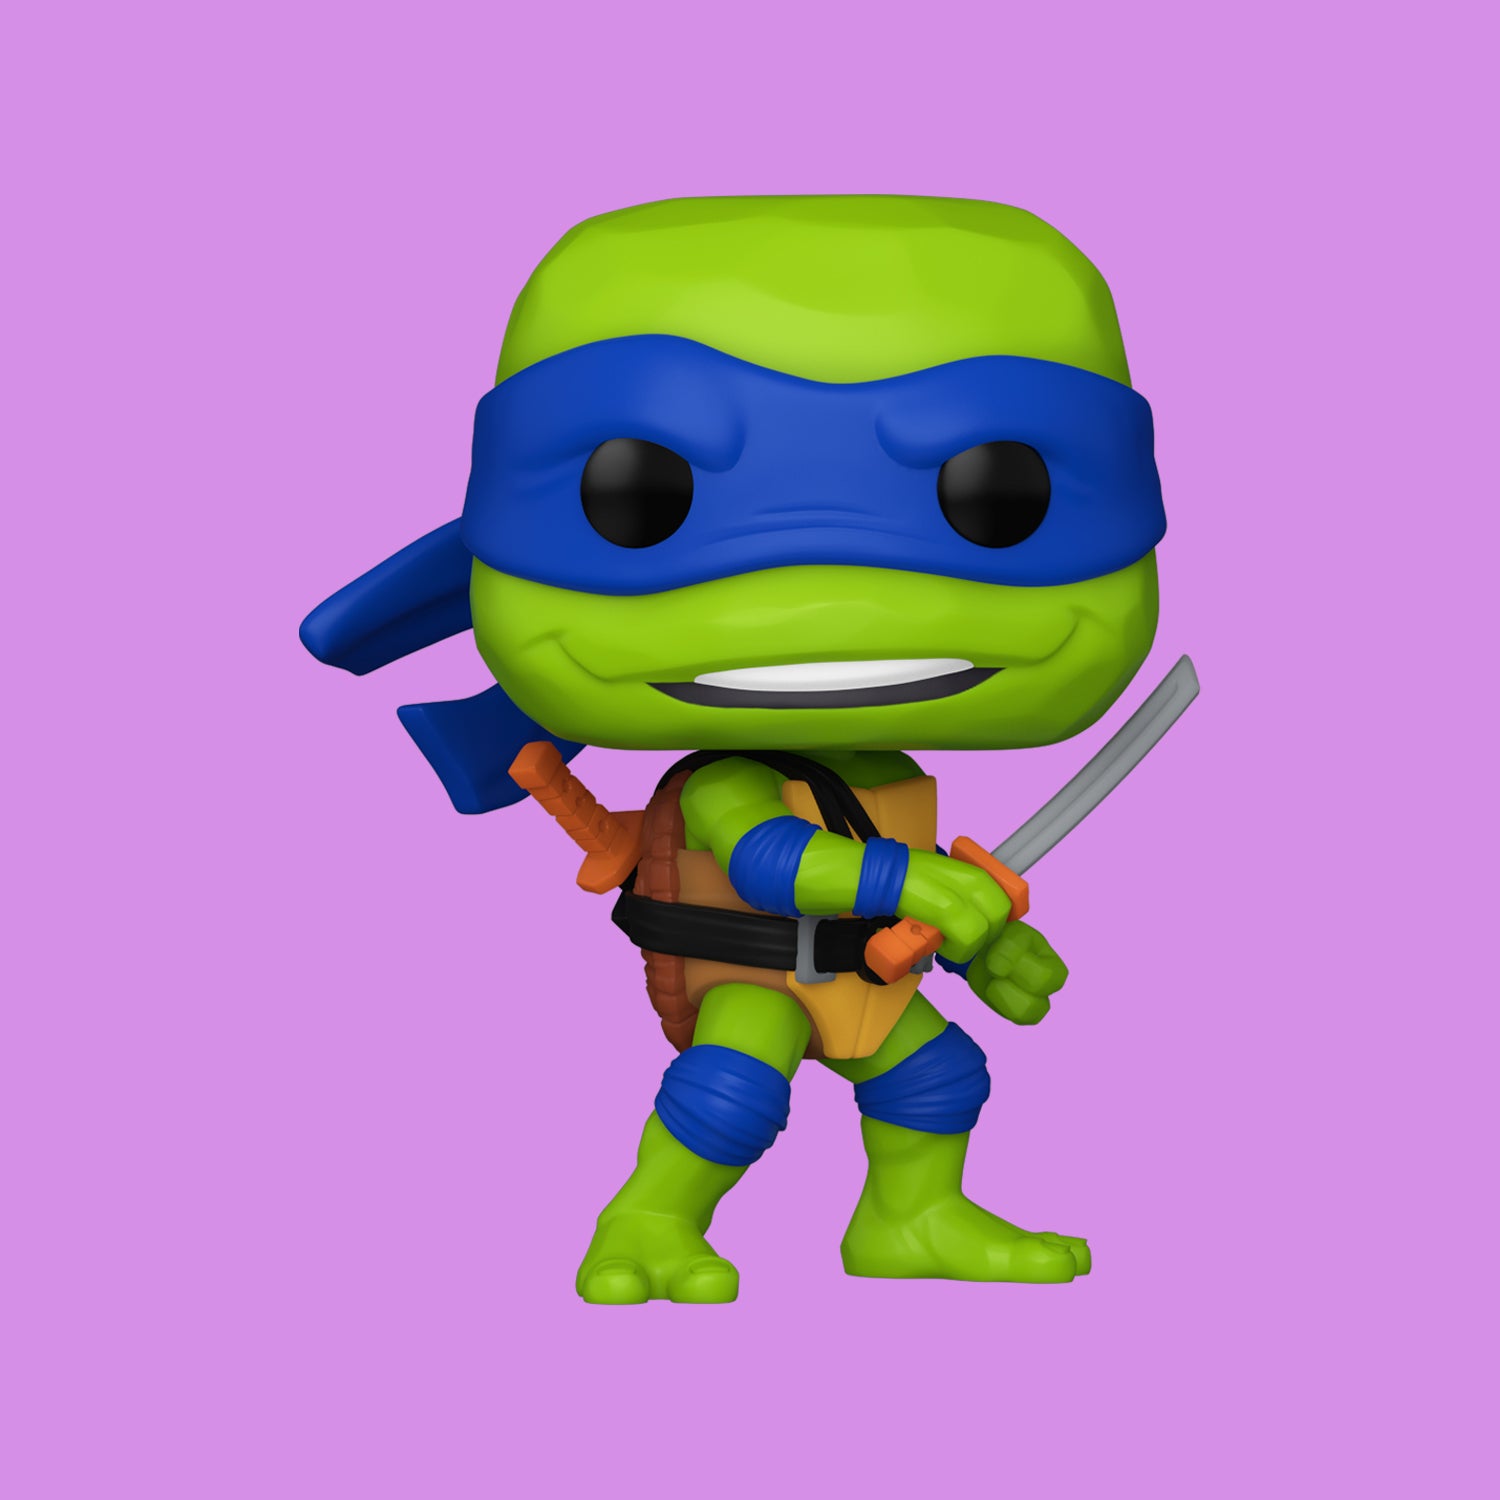 Leonardo Funko Pop! (1391) Teenage Mutant Ninja Turtles: Mutant